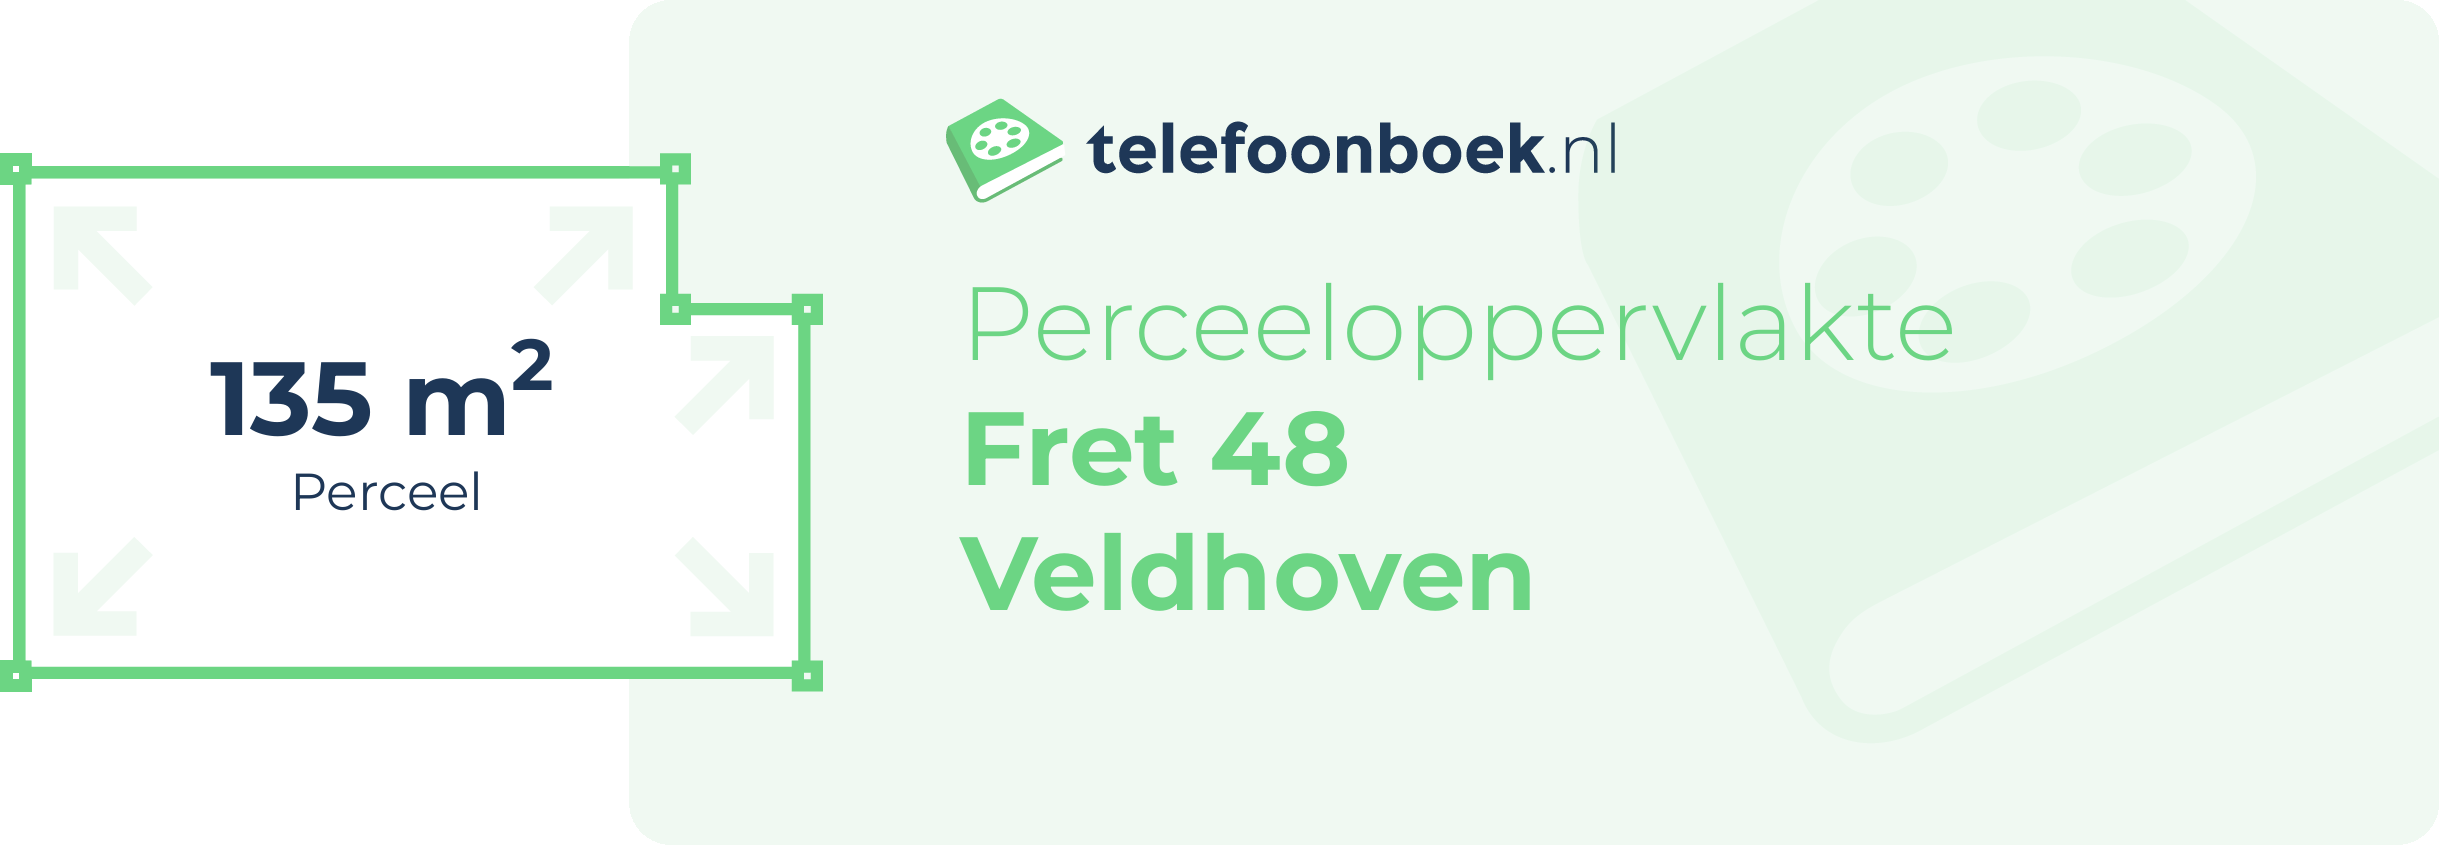 Perceeloppervlakte Fret 48 Veldhoven